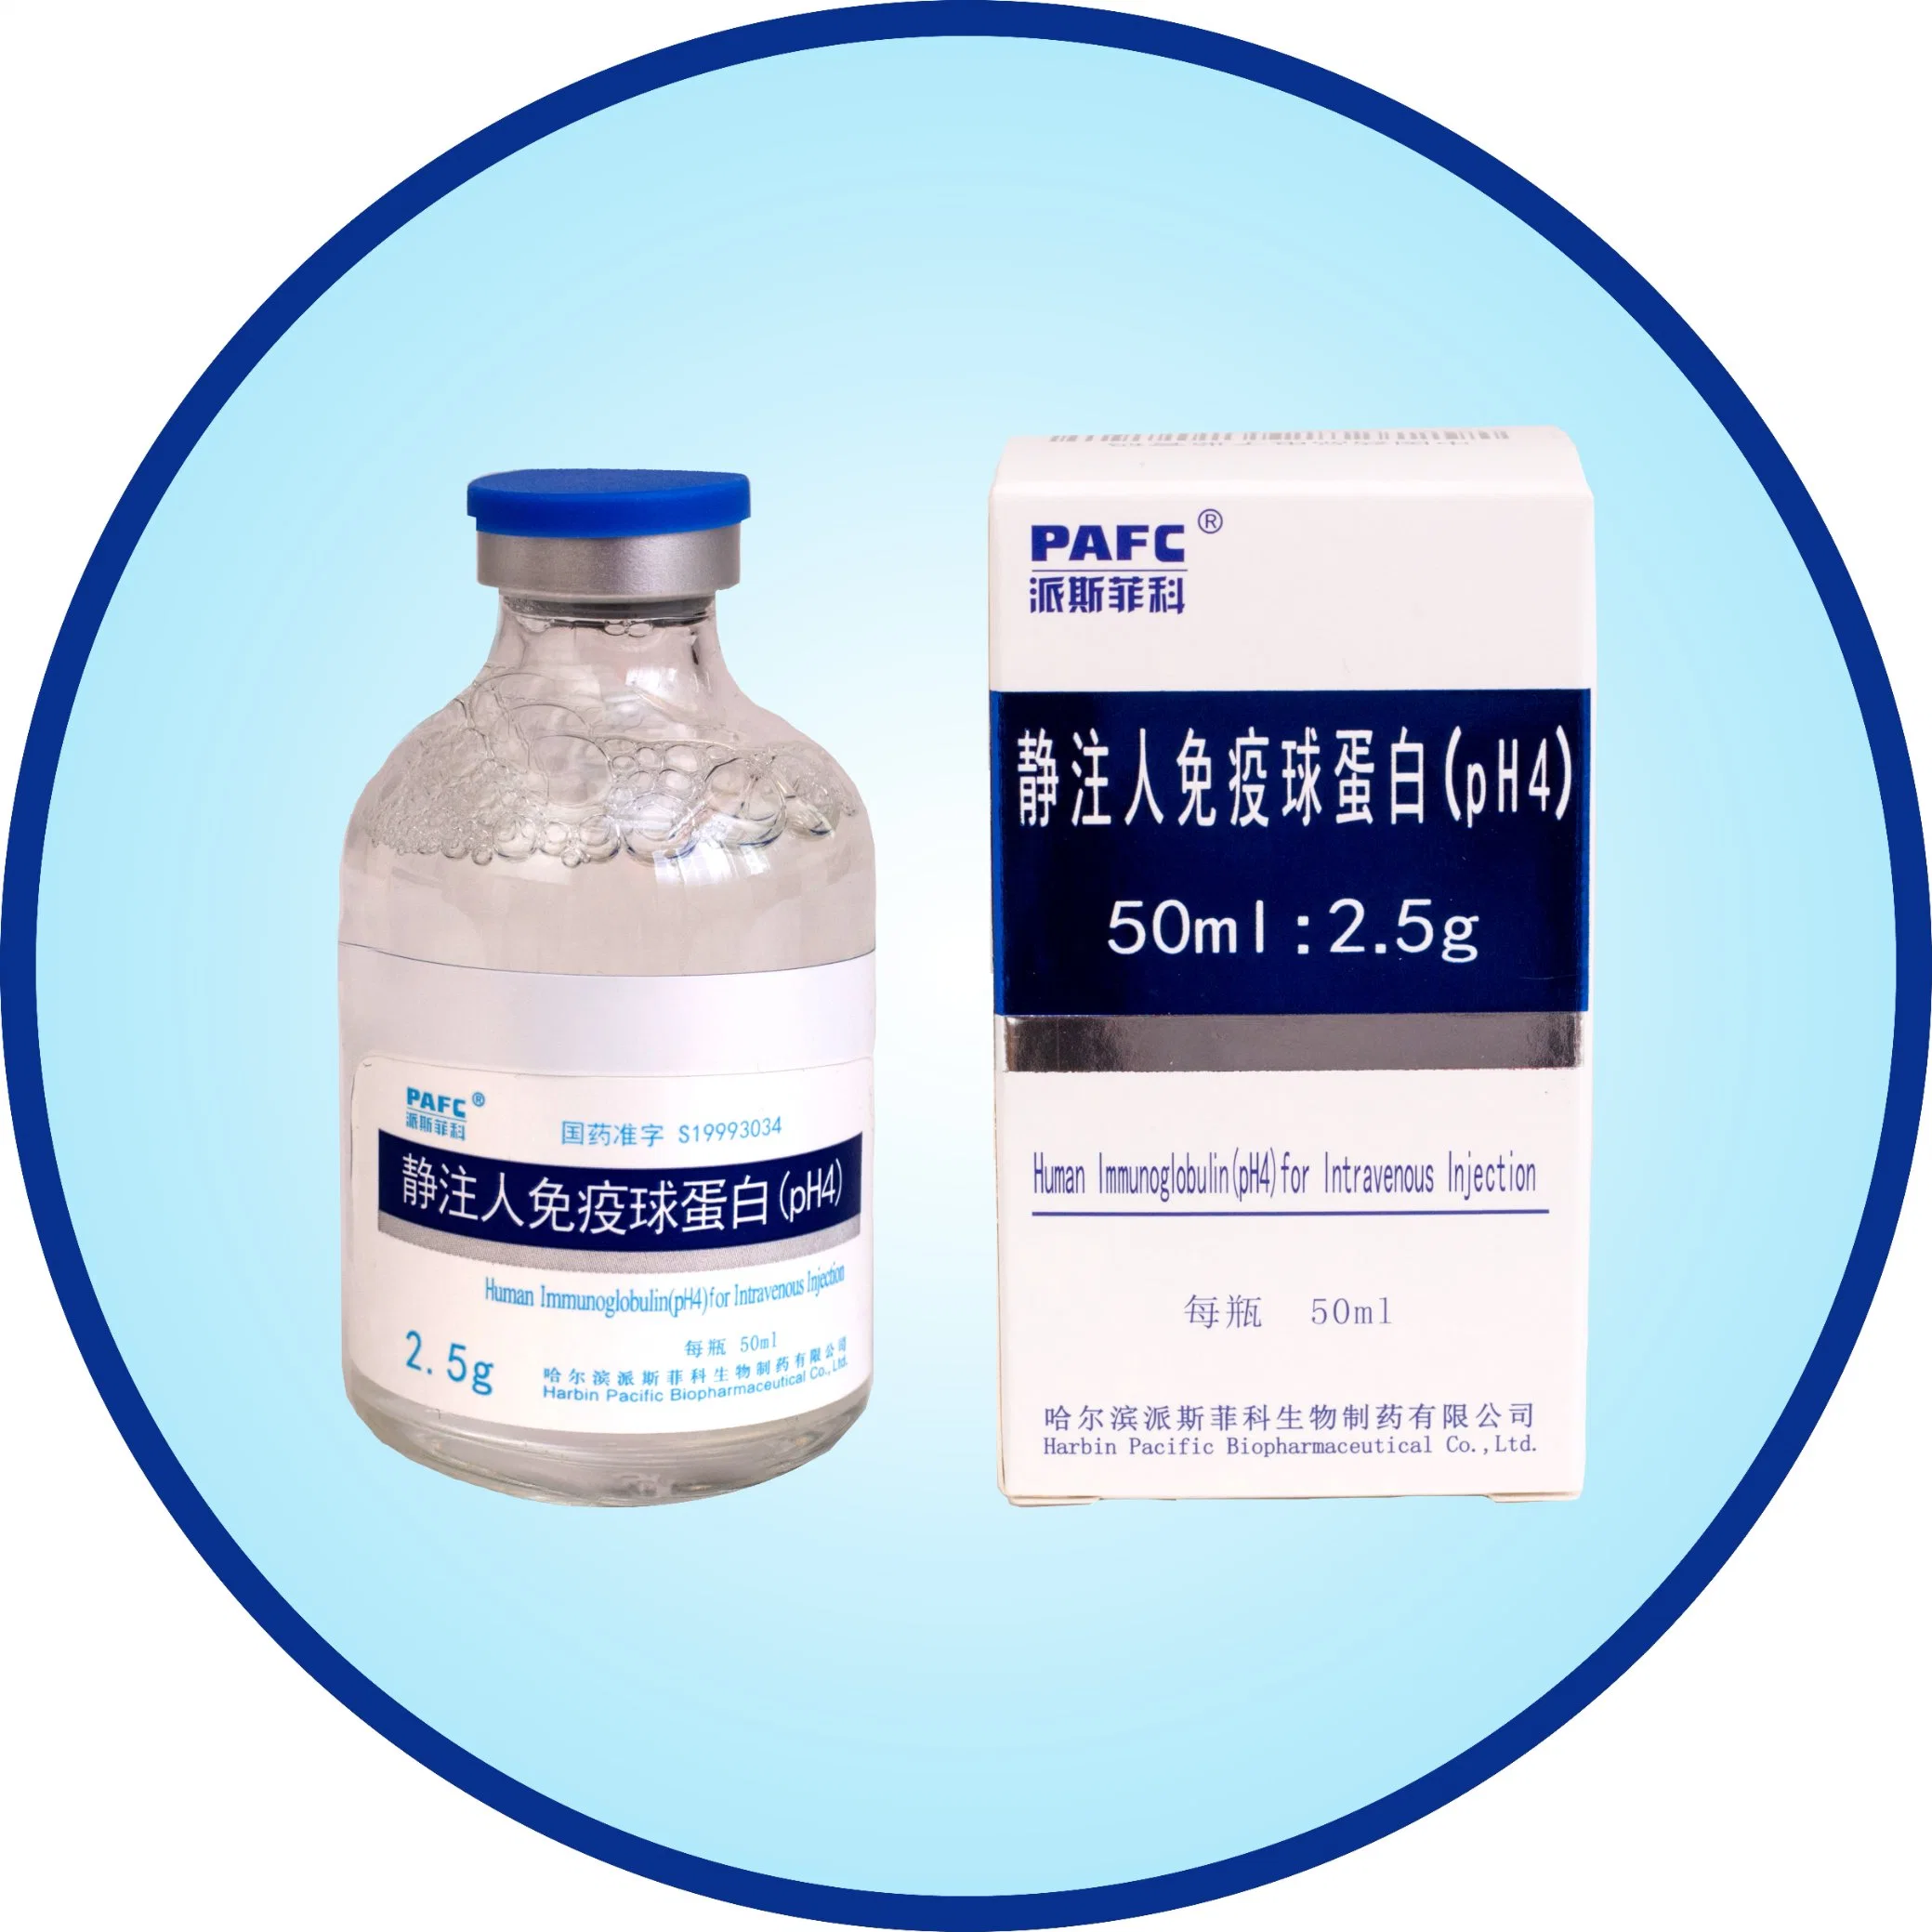 Biologisches Produkt von humanem Immunglobulin (pH4) für intravenöse Injektion-verbessernde Immunität